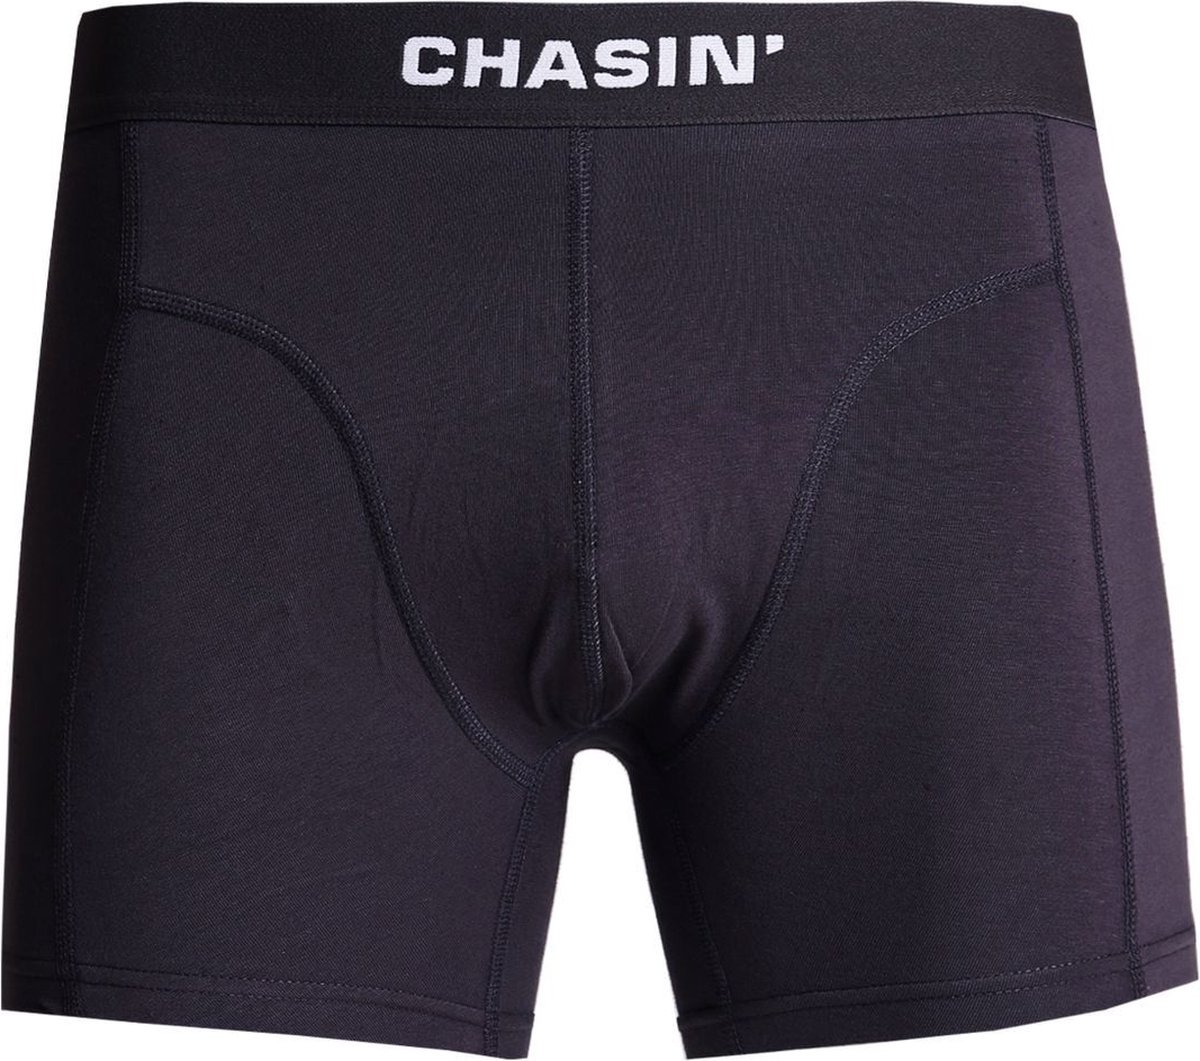 Chasin' Onderbroek Boxershorts Thrice Atmos Meerkleurig Maat M | bol